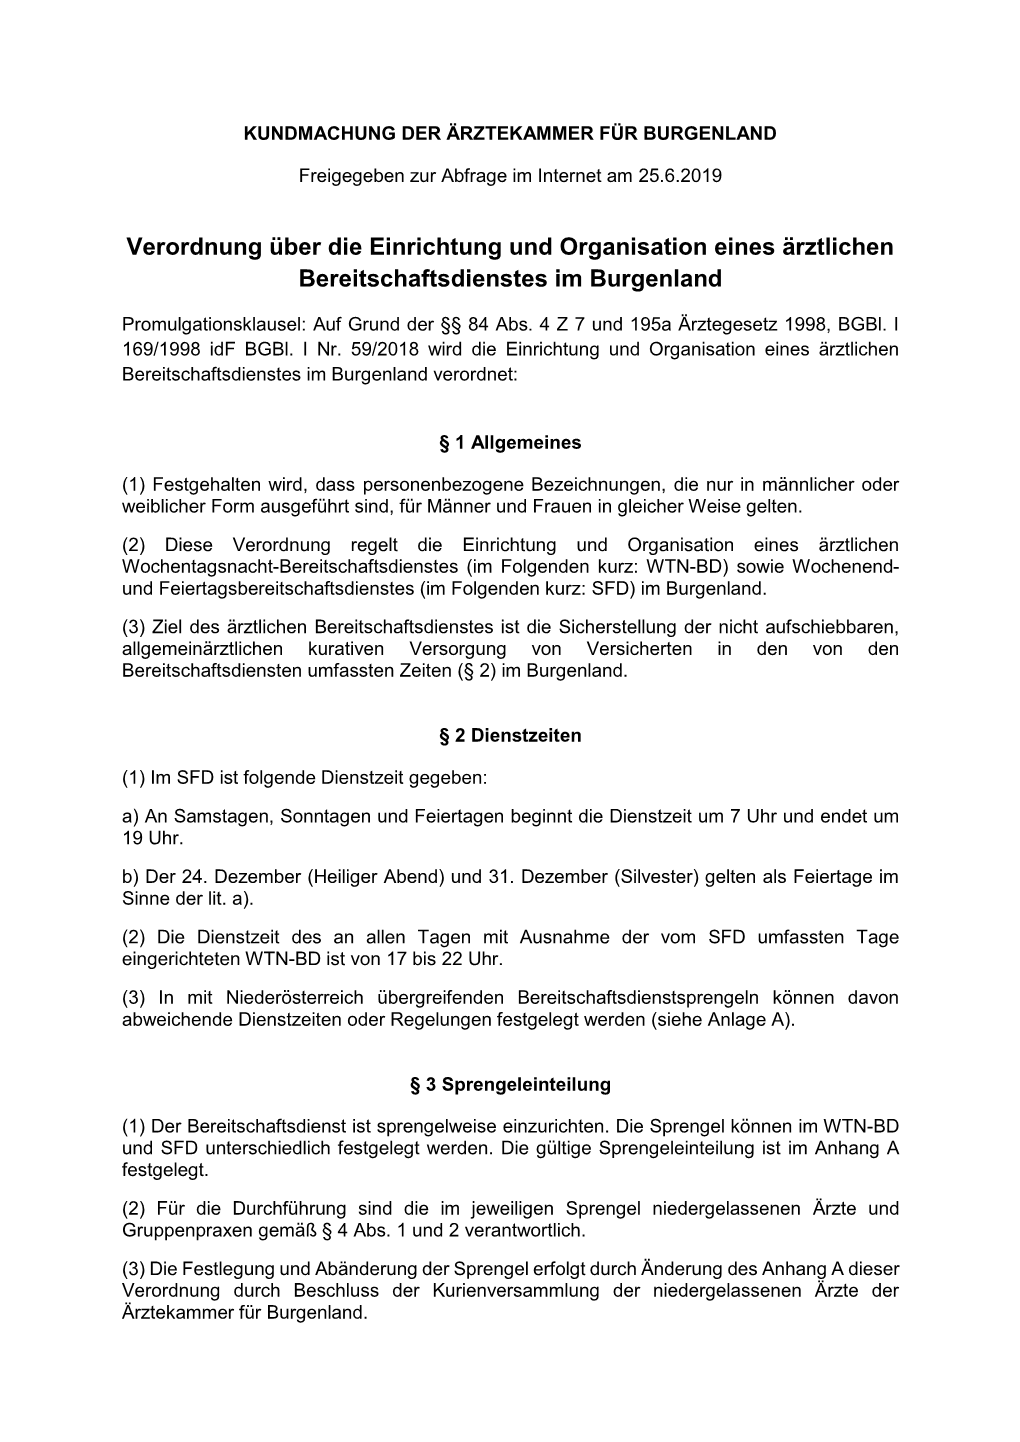 Verordnung Über Die Einrichtung Und Organisation Eines Ärztlichen Bereitschaftsdienstes Im Burgenland